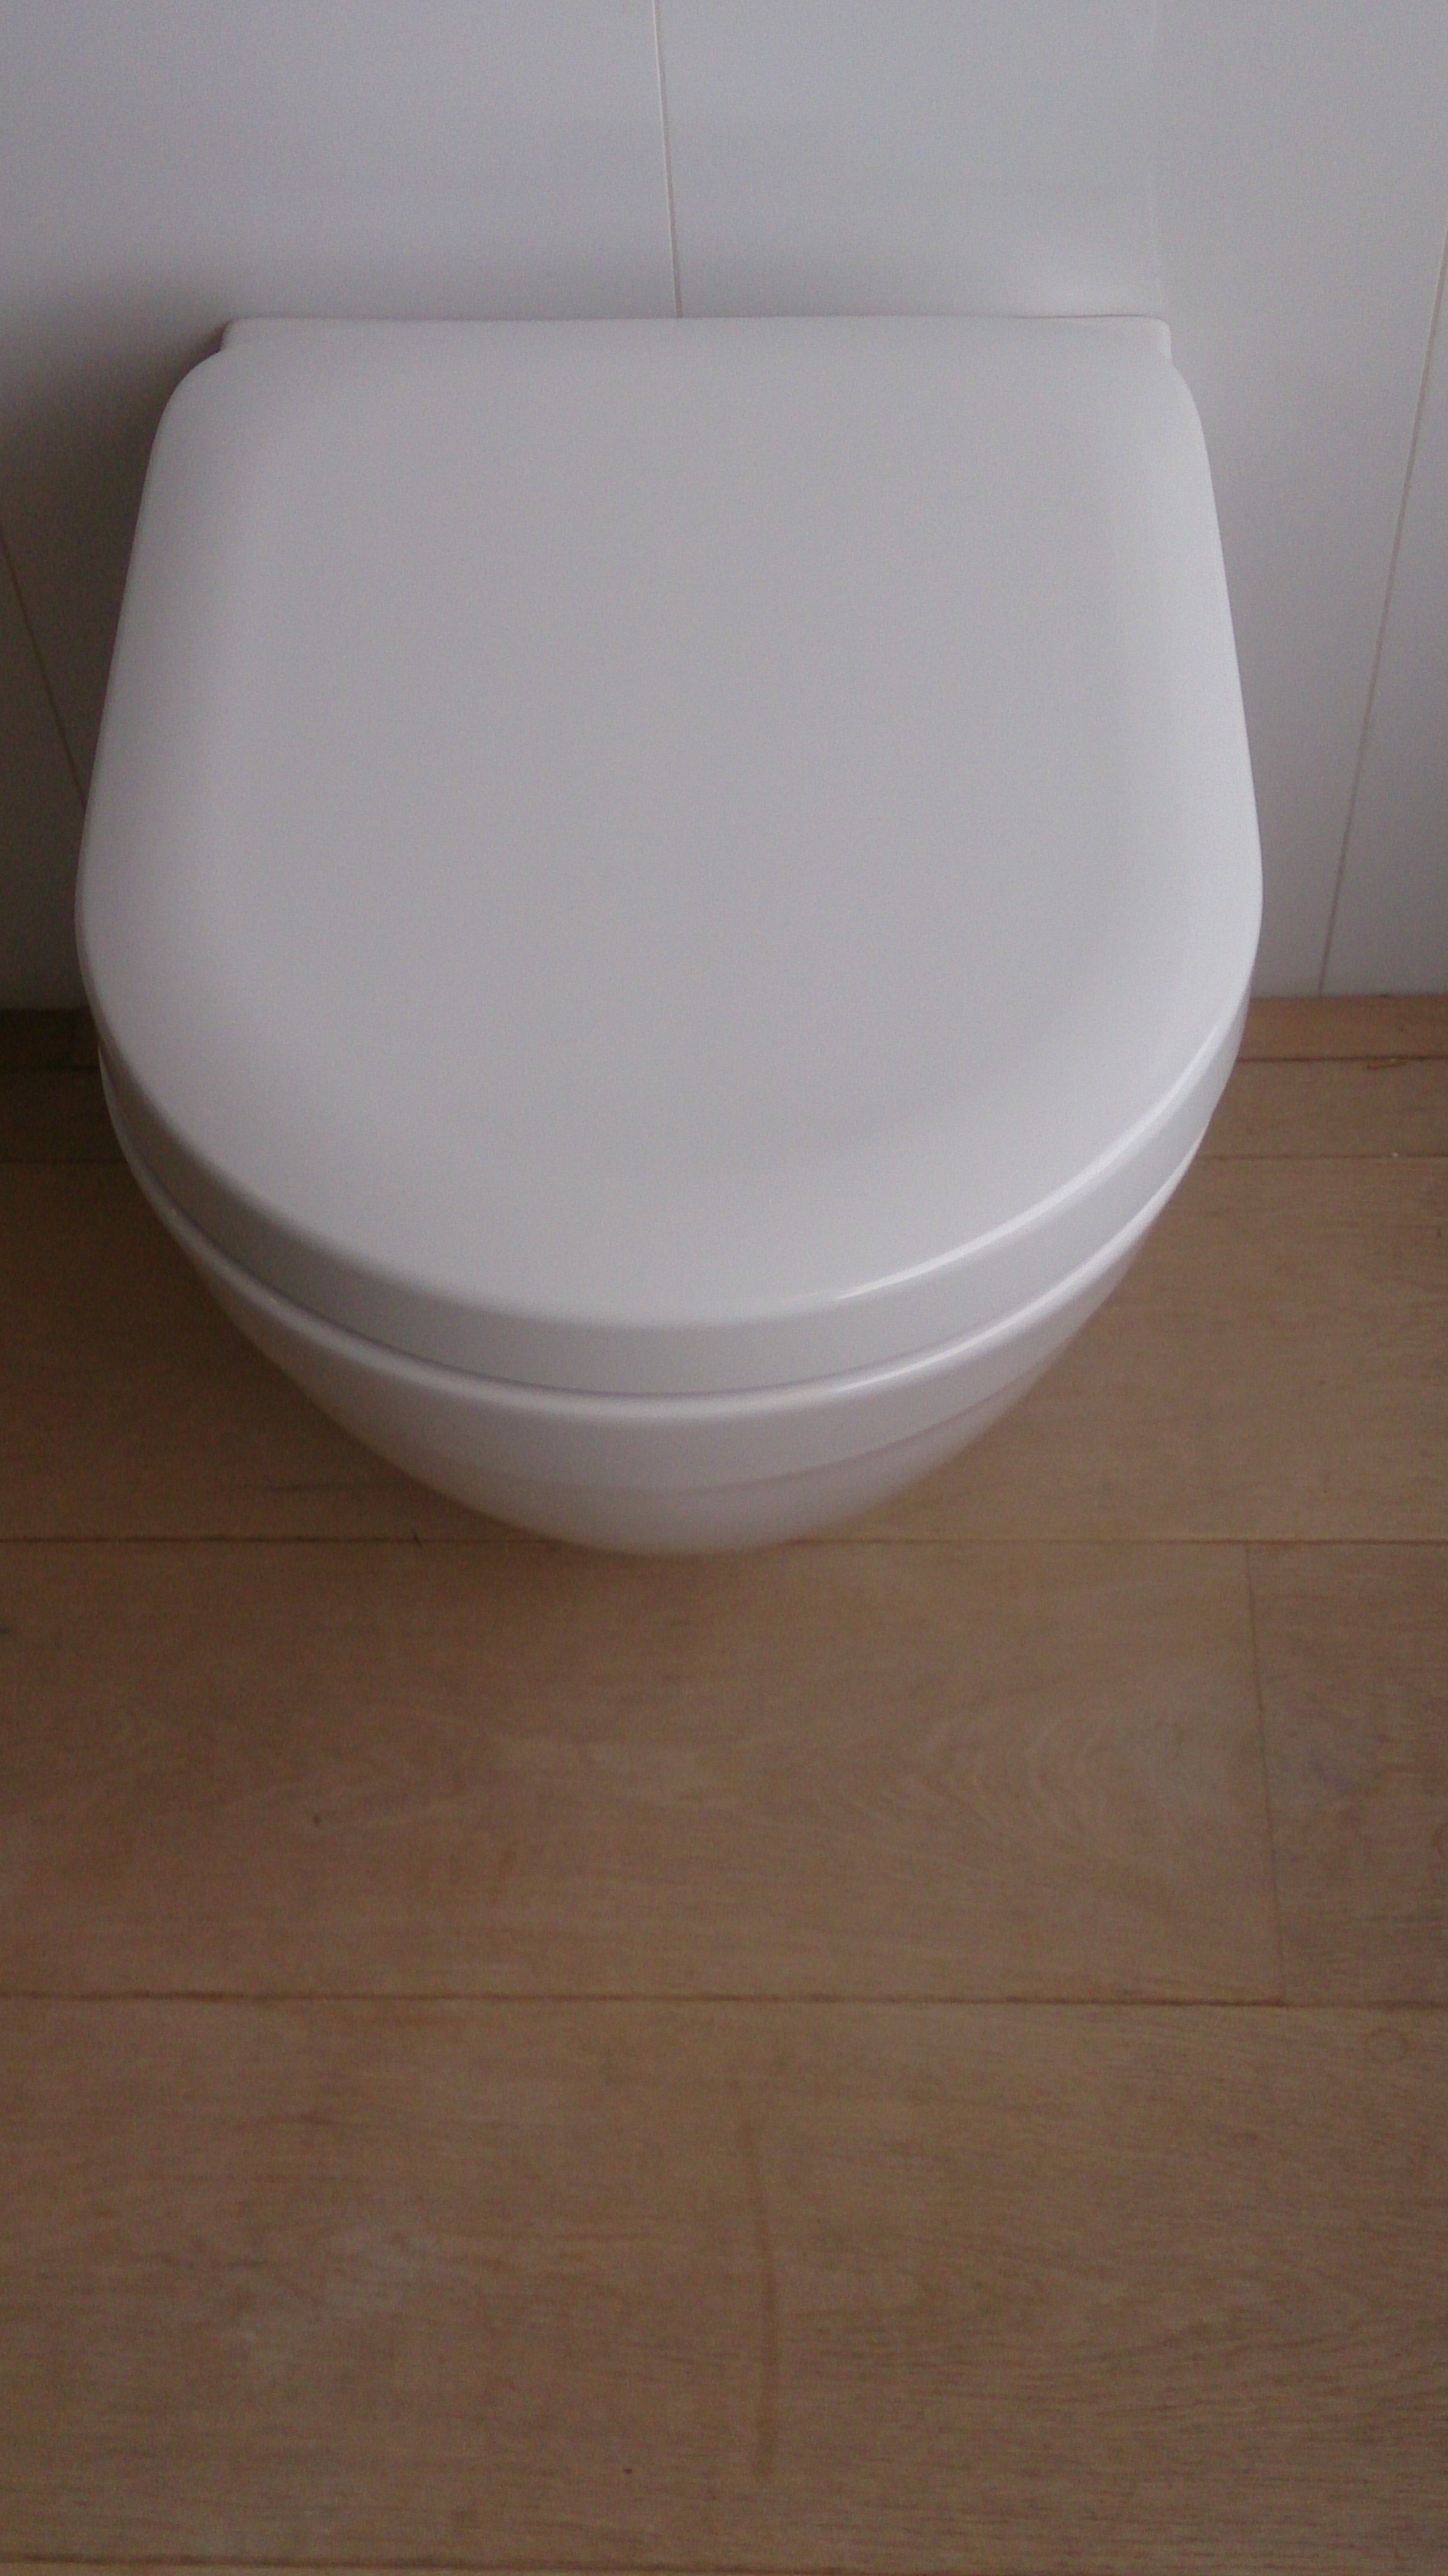 badexclusief groningen dé badkamerarchitect voor Nederland presenteerd in de showroom het Toto-toilet met de beste kwaliteit en een tornado-flush spoeling en quick-release soft-close wc-bril.